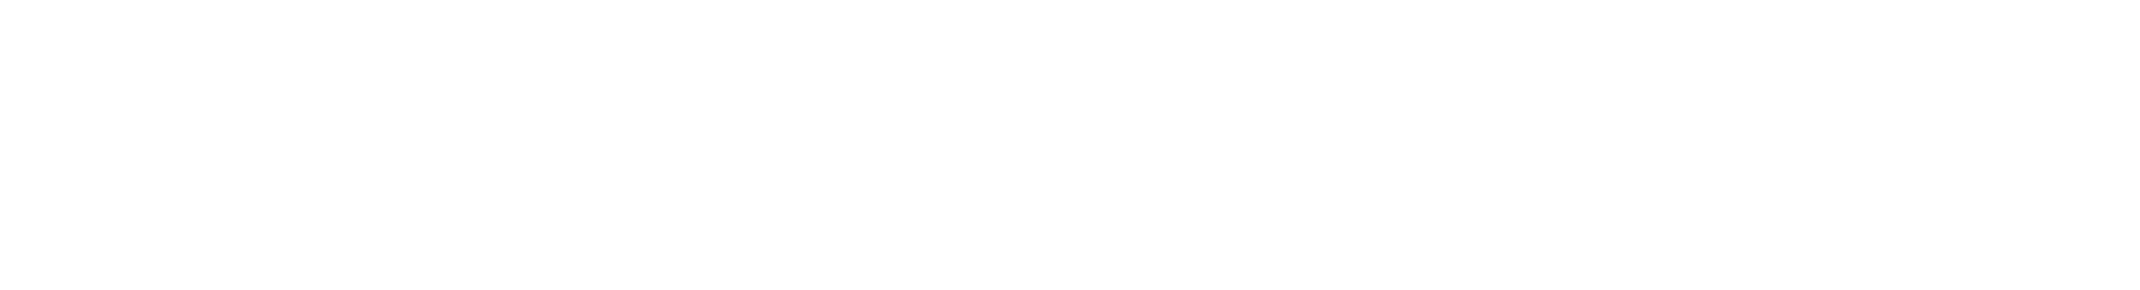 沖縄県八重山バレーボール協会